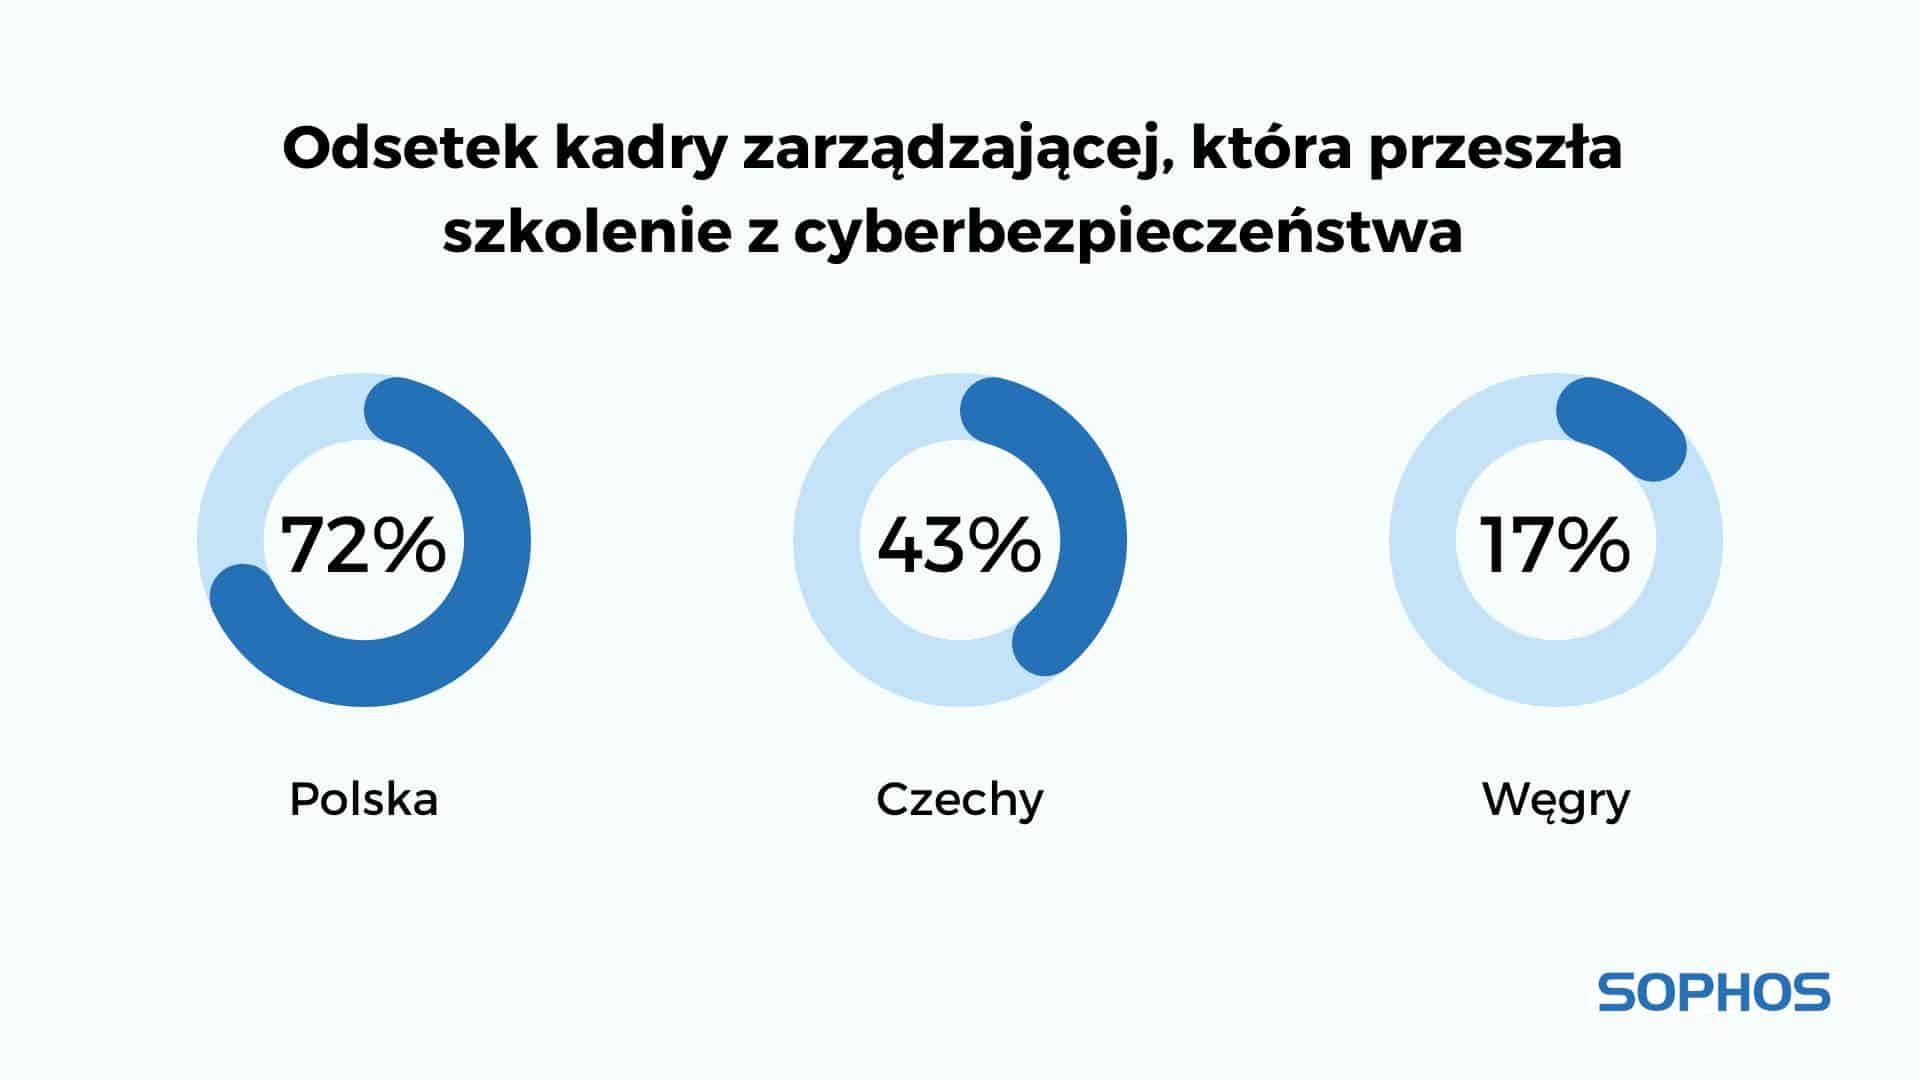 Połowa osób na stanowiskach kierowniczych w Polsce zetknęła się z phishingiem